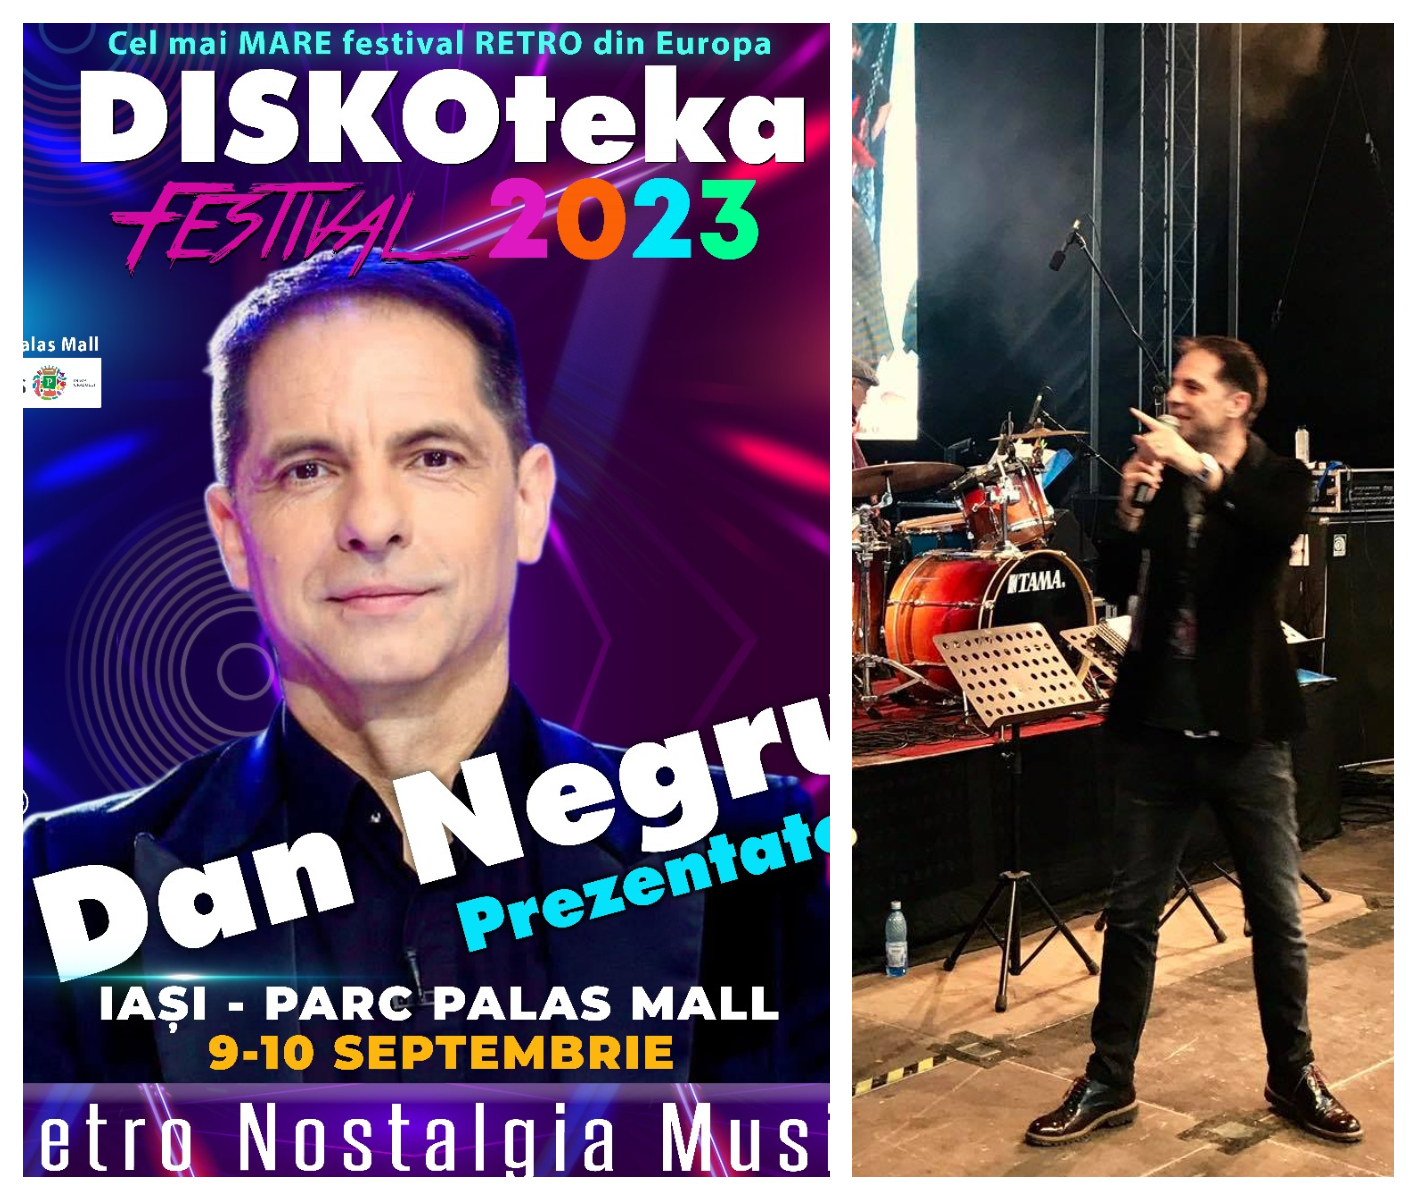 DISCOteka Festival 2023, program complet! În premieră, Dan Negru va fi MC-ul evenimentului anului din lumea iubitorilor retro muzicii